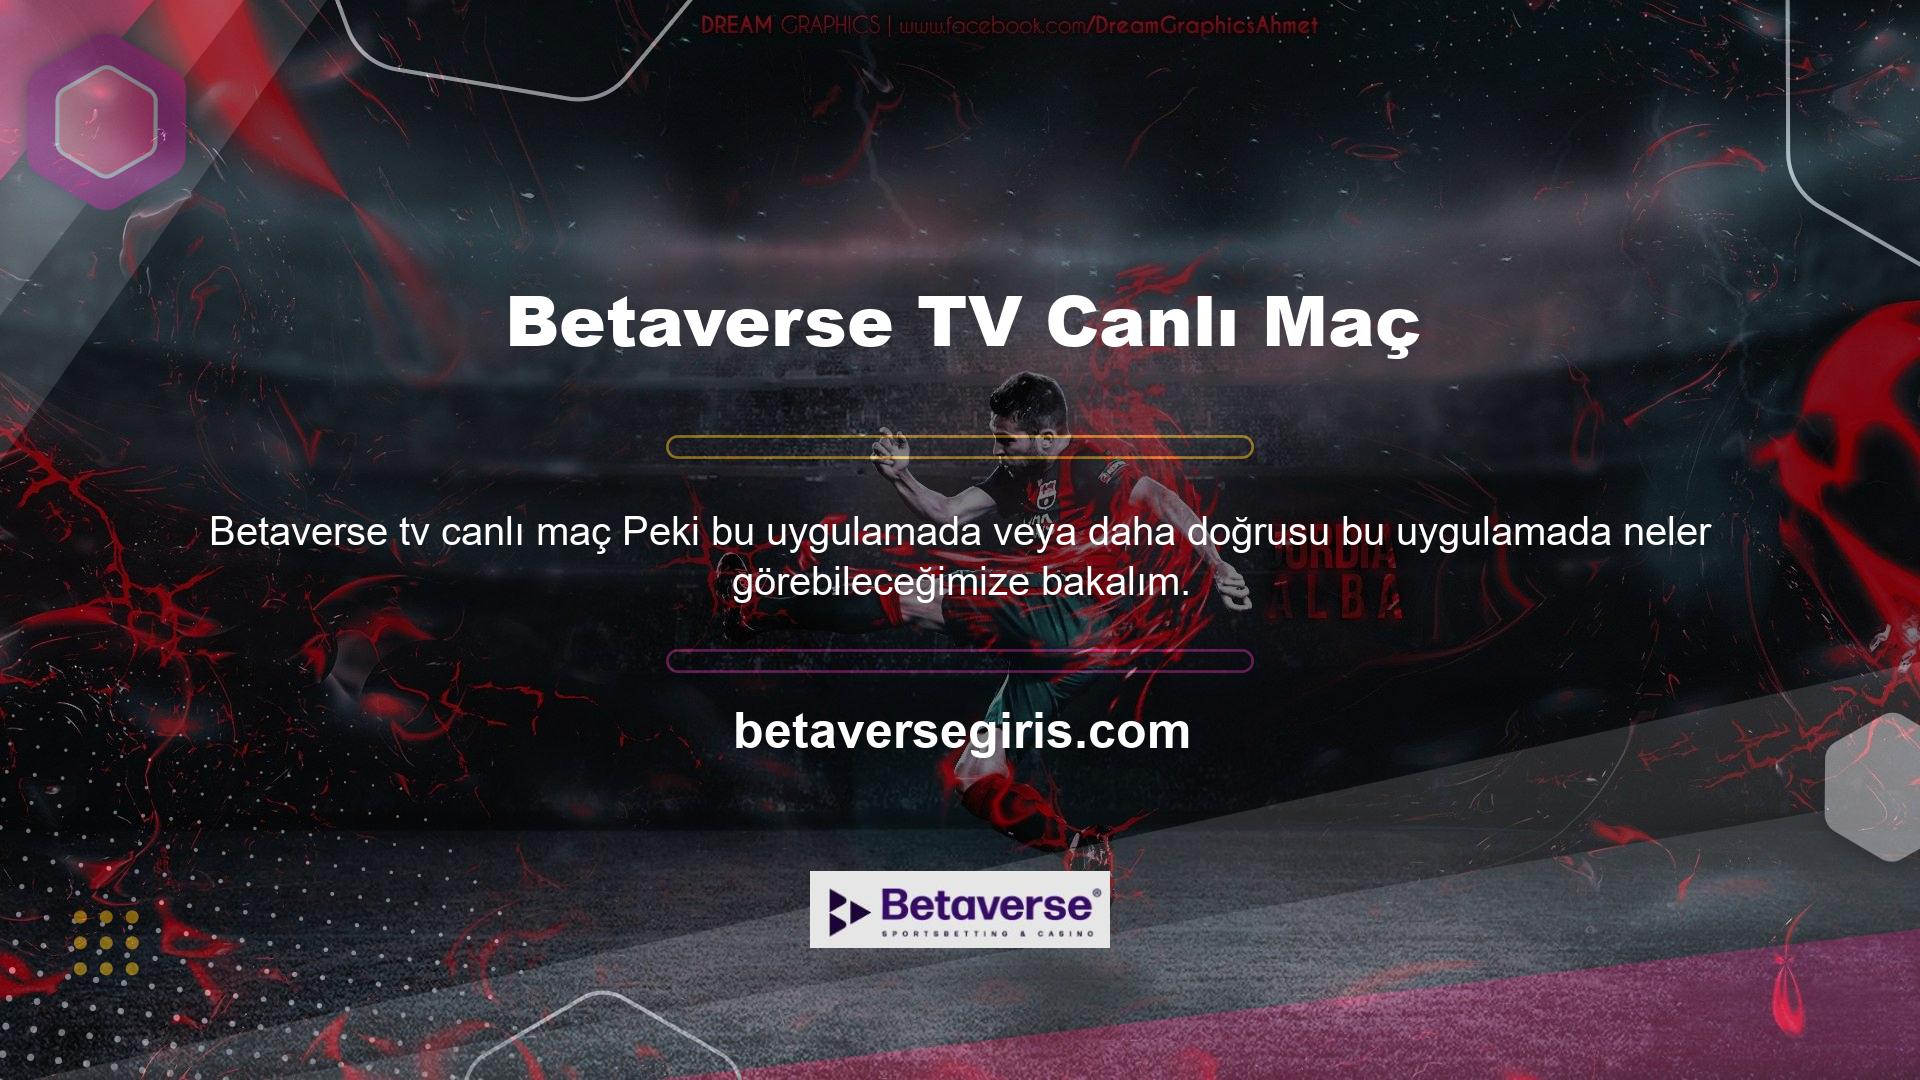 Betaverse TV Canlı Maç